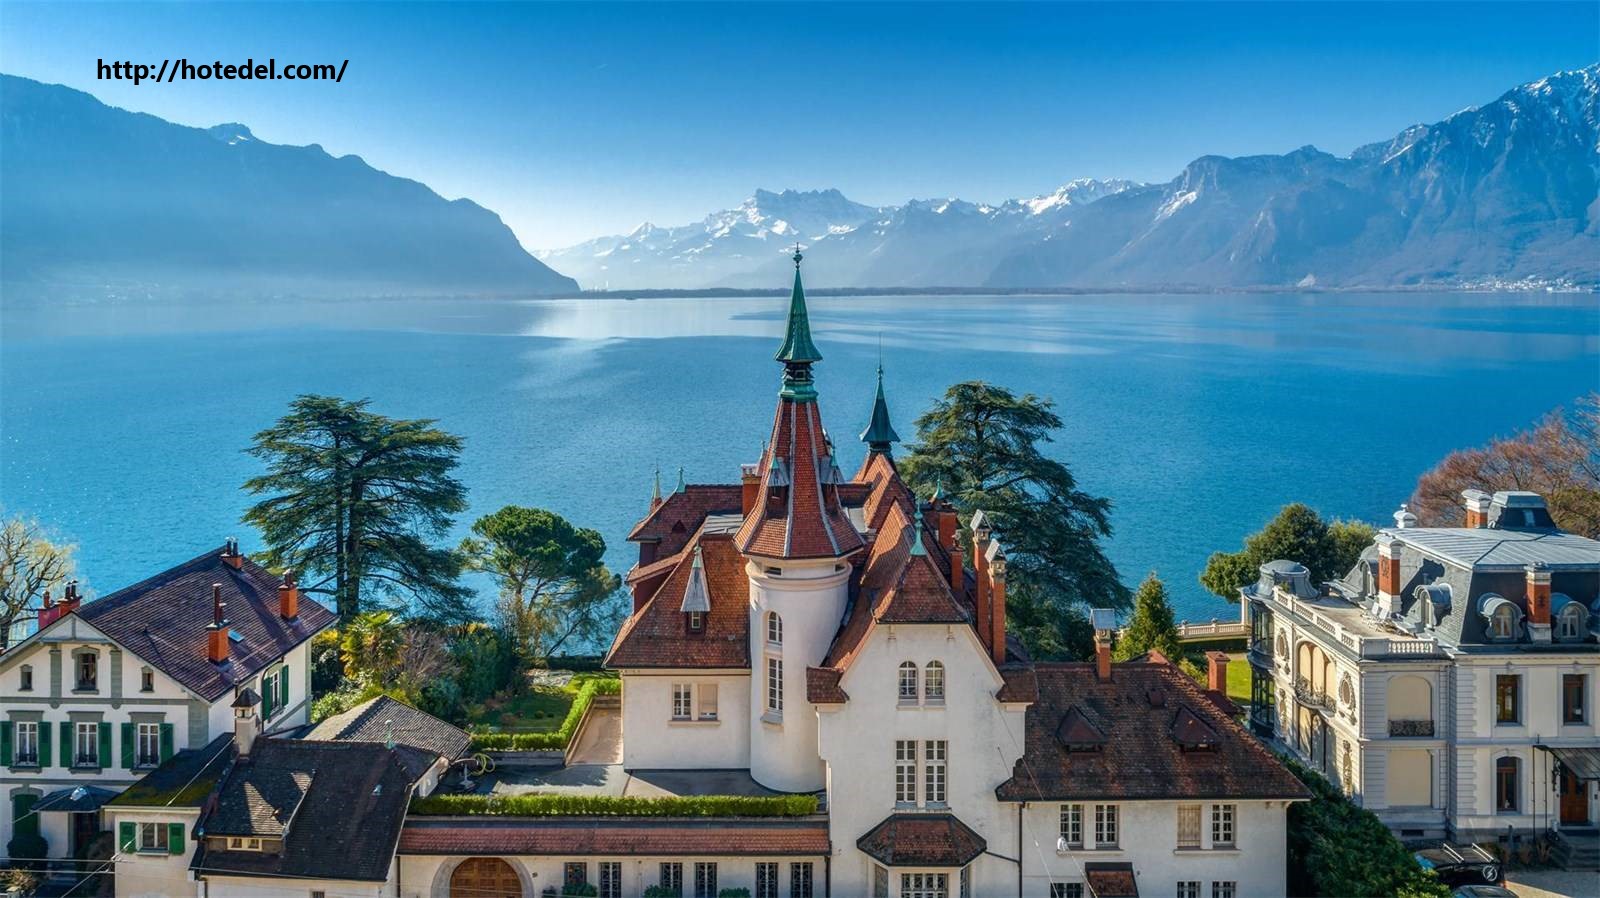 Tempat Wisata Terkenal Di Swiss